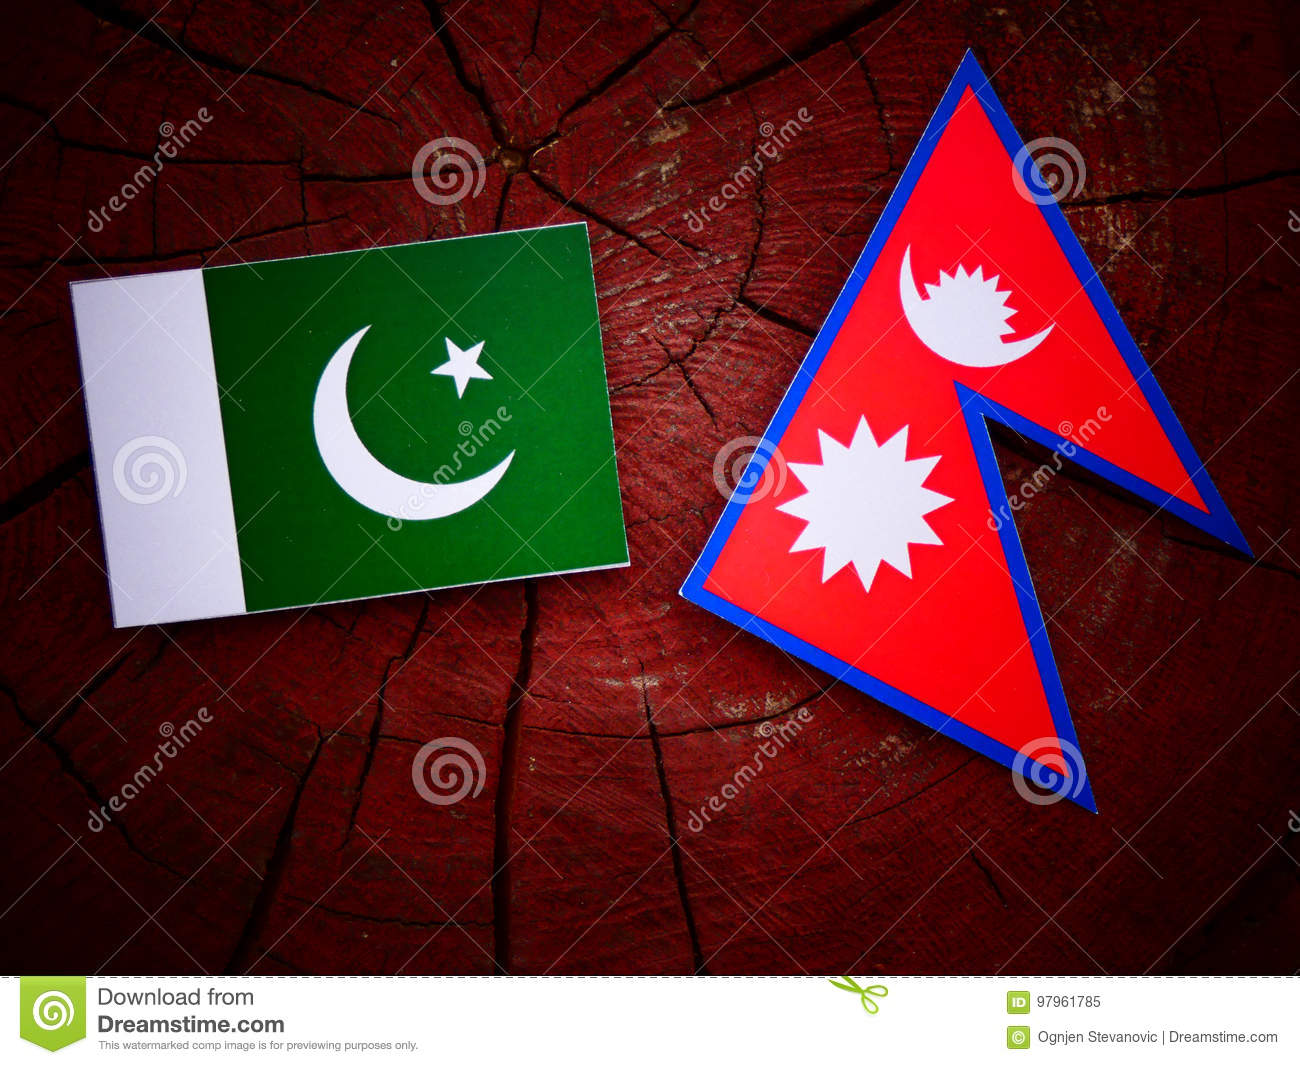 नेपाली र पाकिस्तानी सेना सहयोग विषयमा छलफल